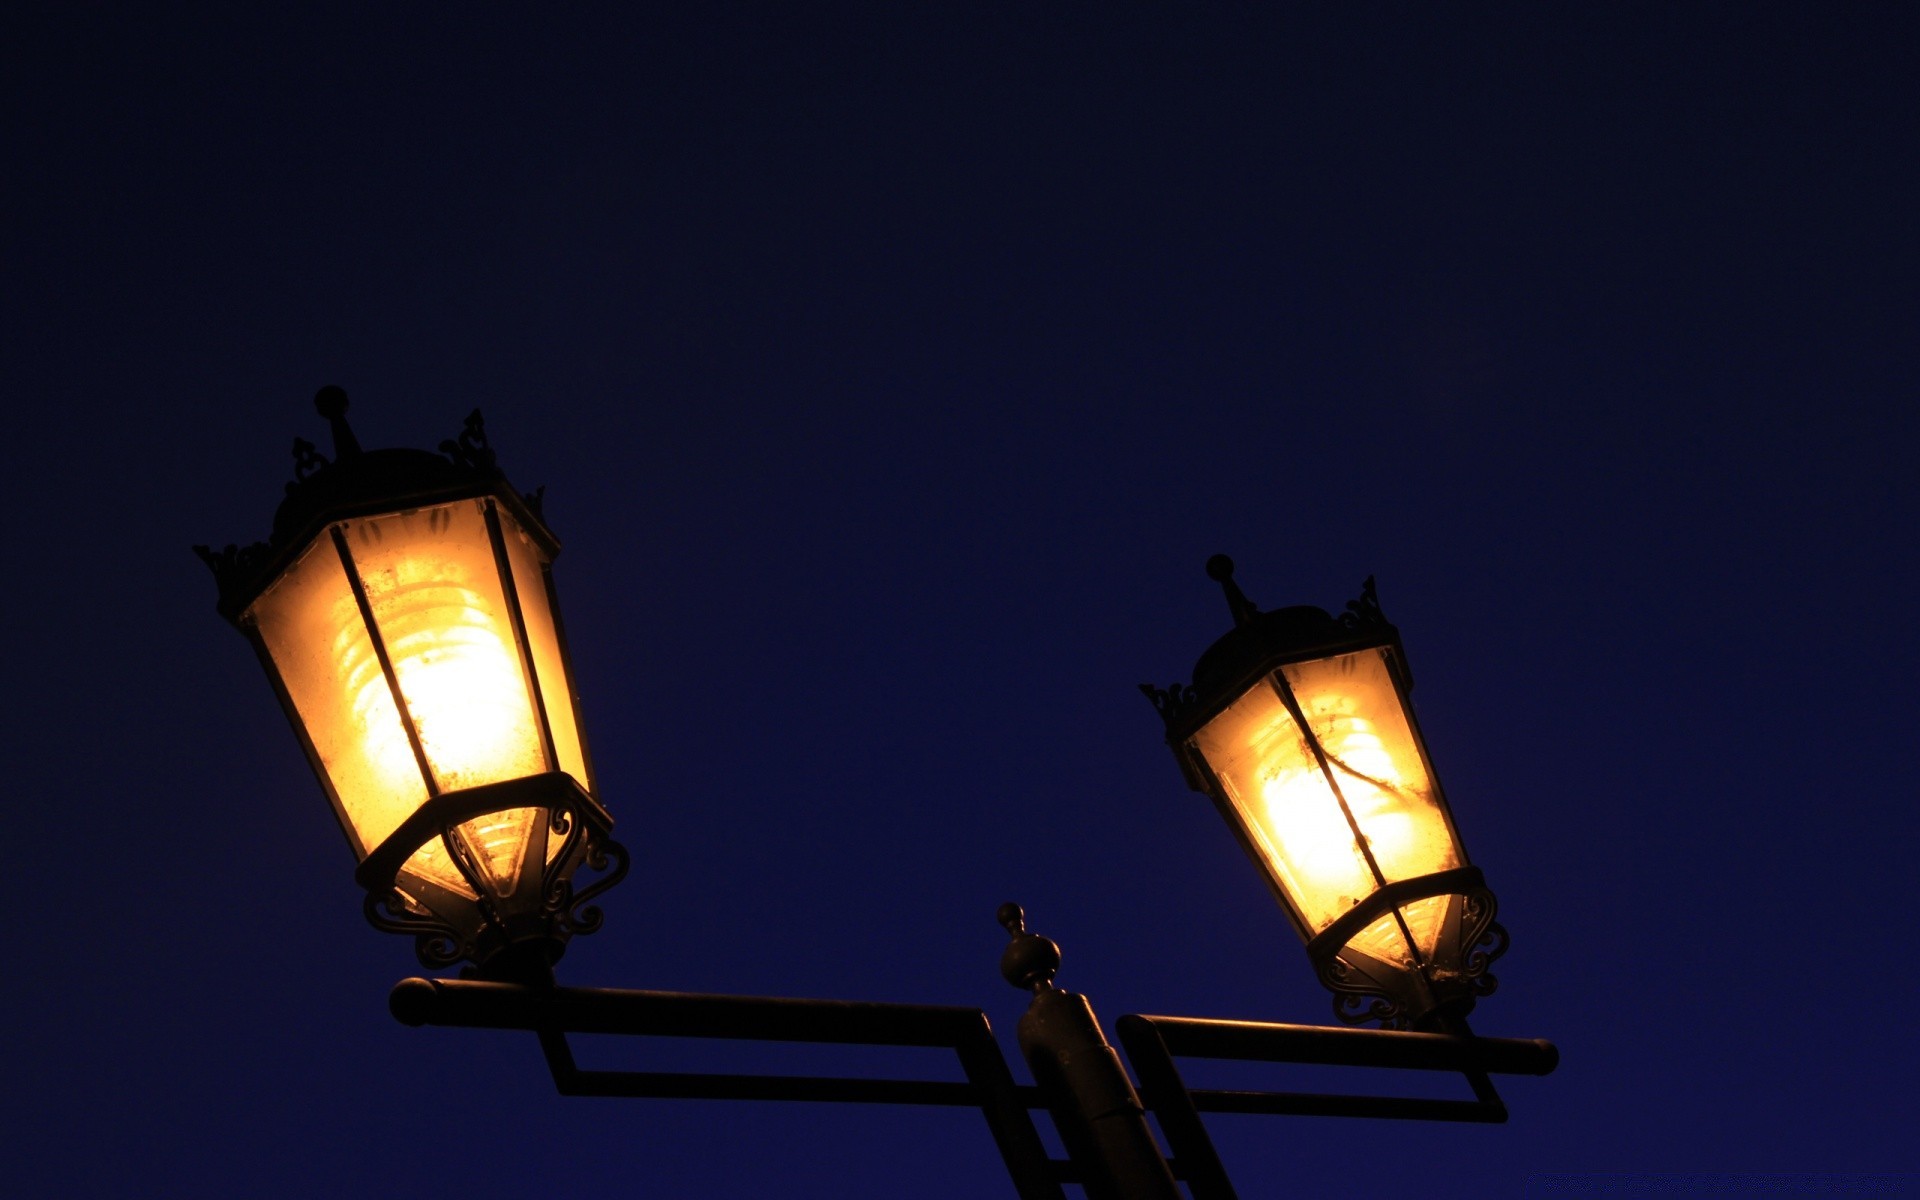 другие города фонарь лампа подсветкой электричество свет темный вечером лампы светофор пламя яркий сумрак свеча луна фонарный столб сожгли оборудование небо мощность